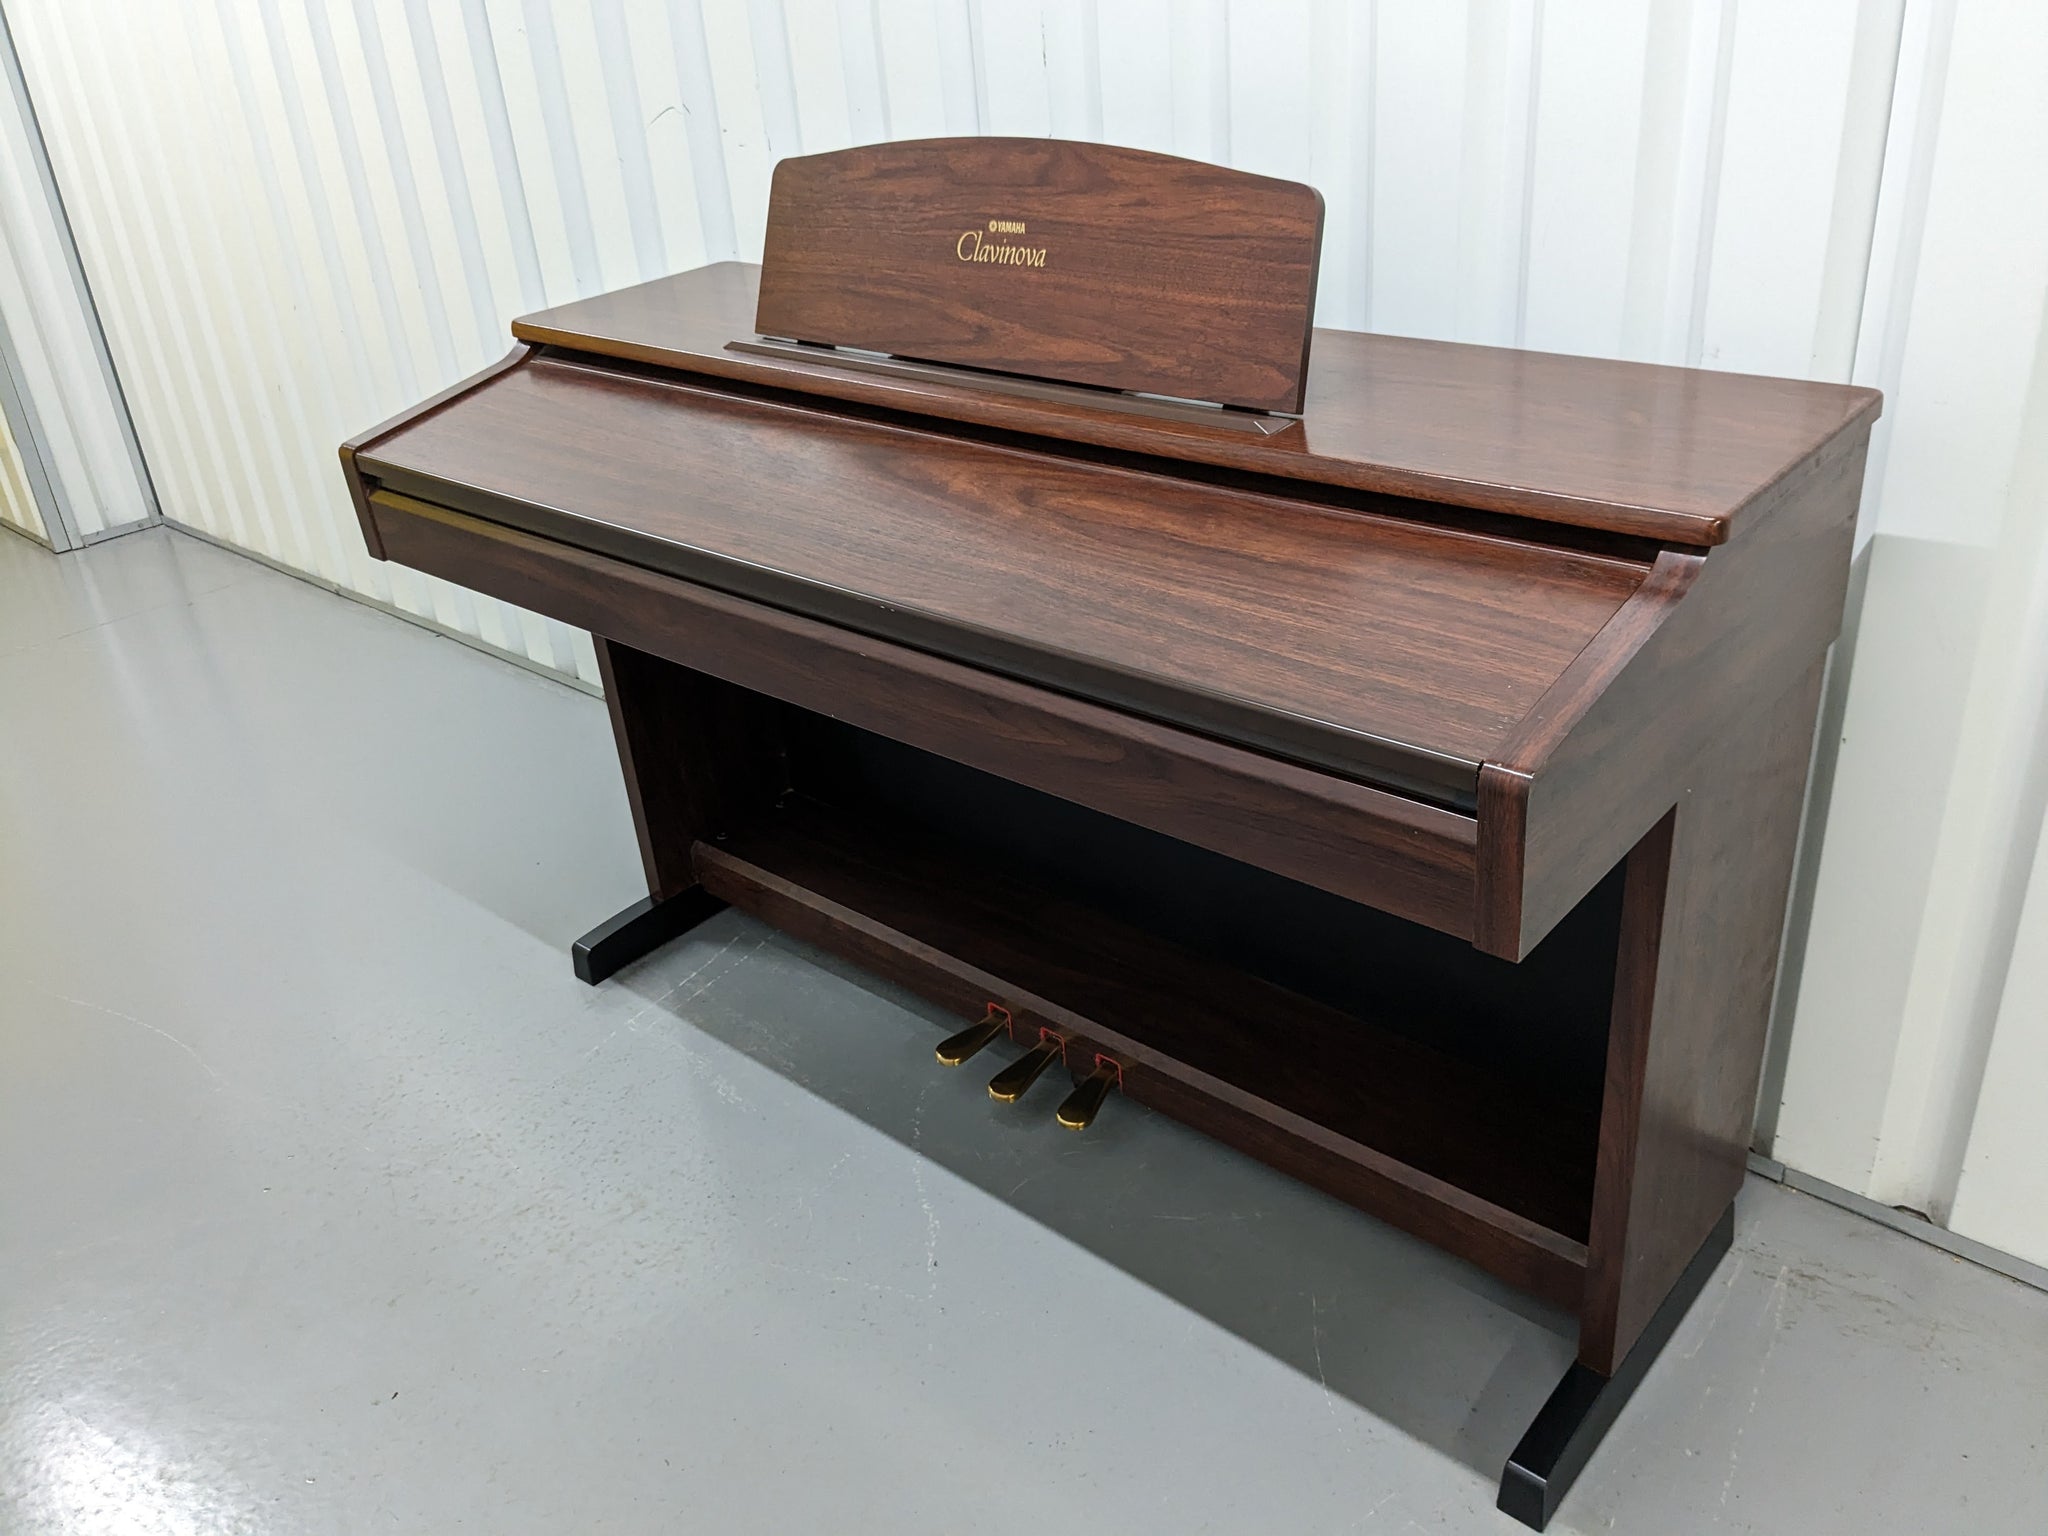 Yamaha Clavinova CVP-103 Digital Piano arranger in mahogany stock 